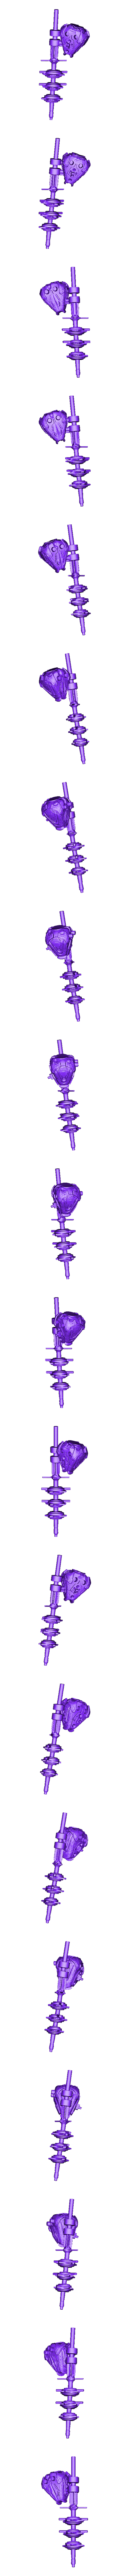 heart and spine combined.obj Файл OBJ Alita battle angel Junkyard model・Модель 3D-принтера для загрузки, paulienet